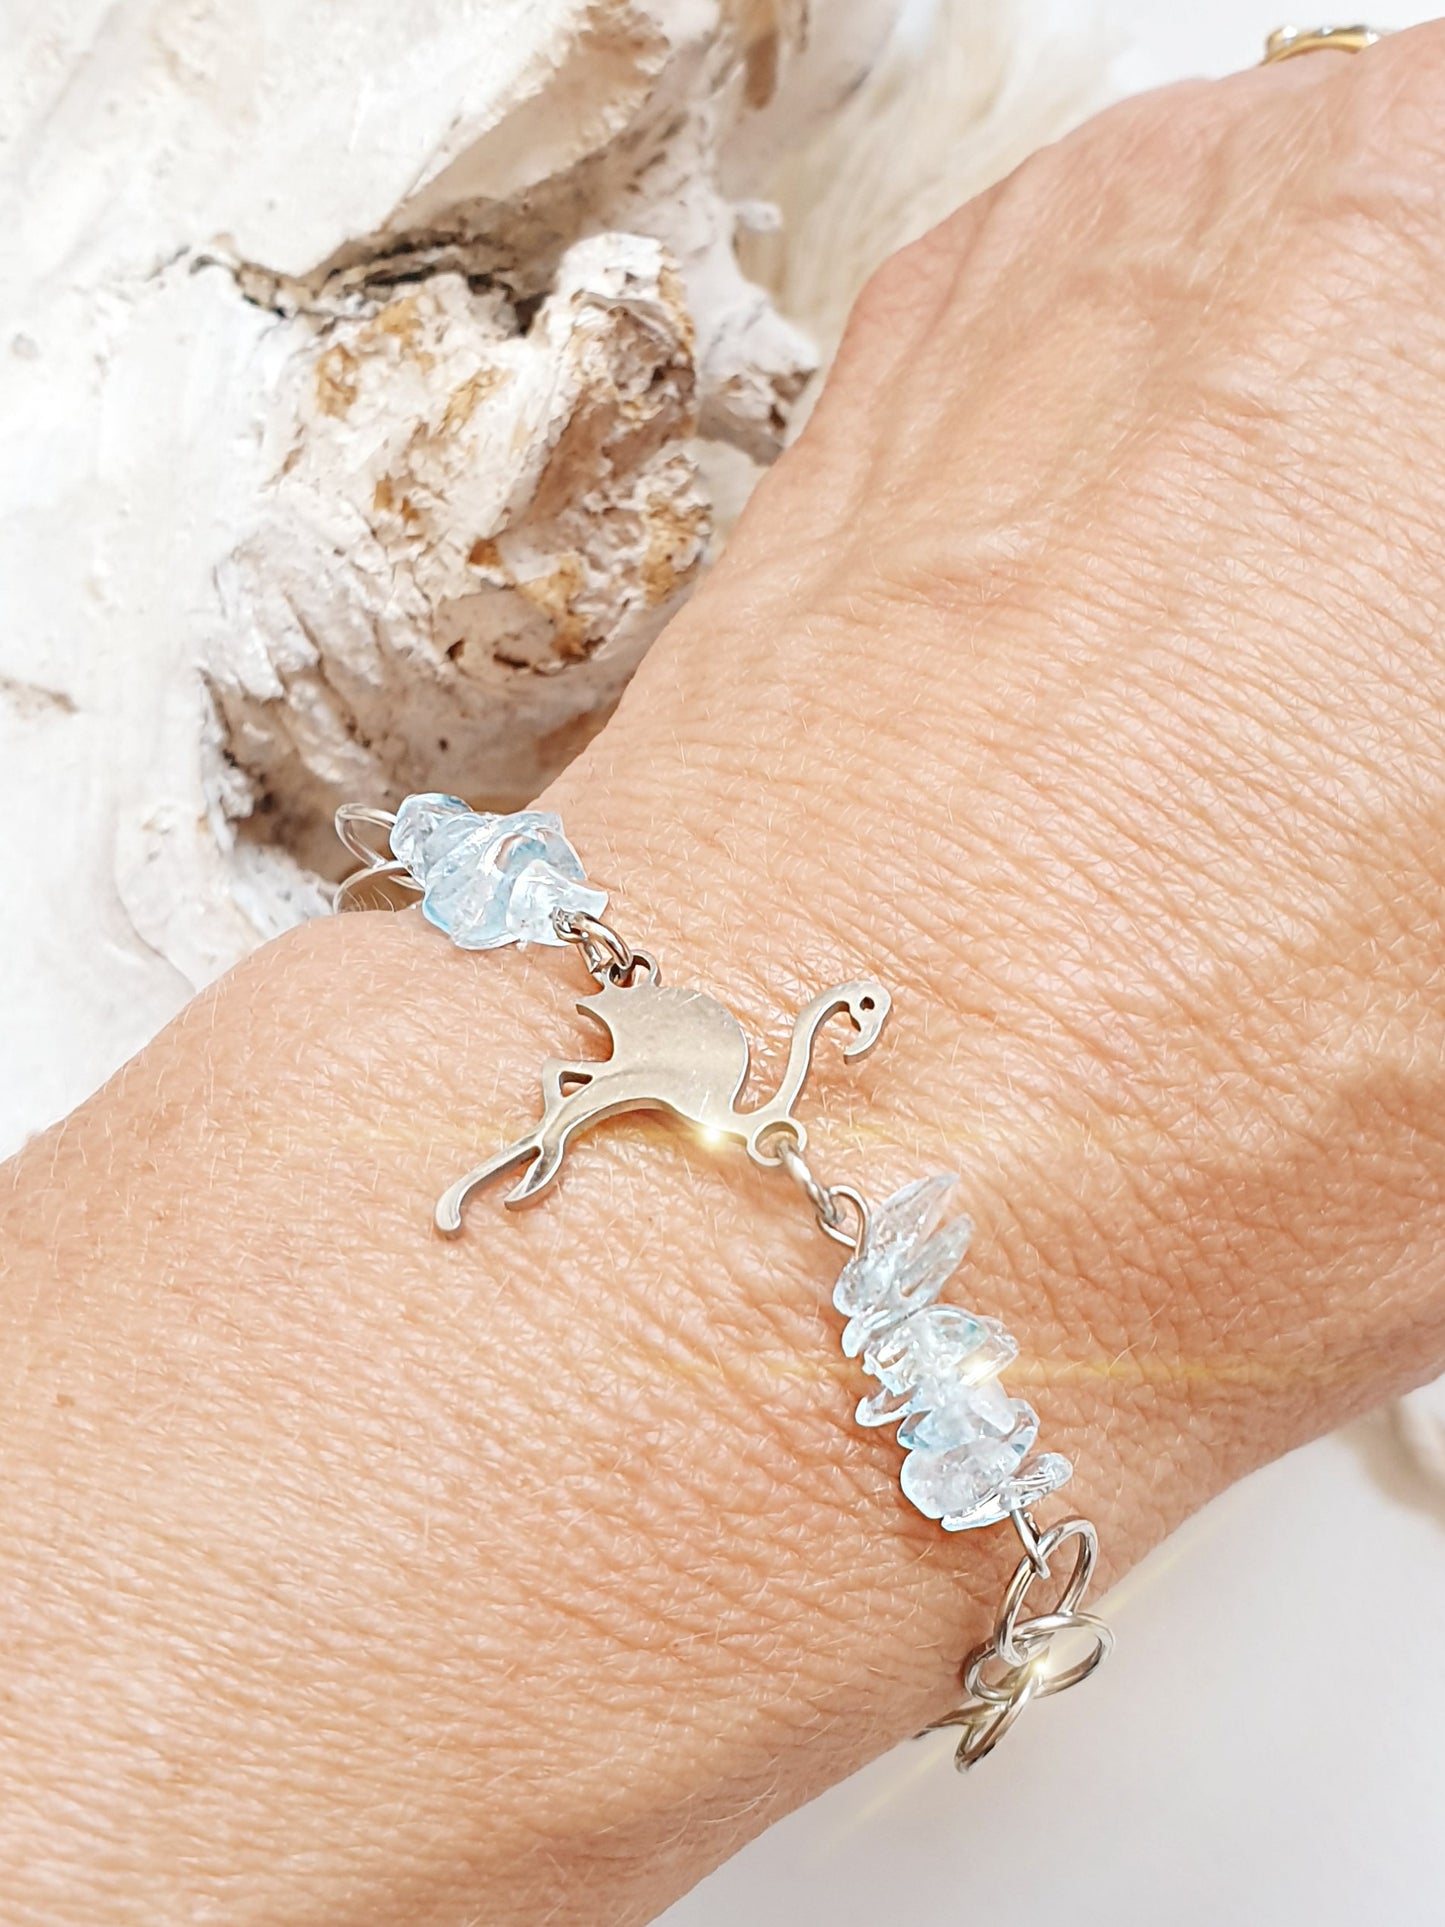 Armband mit Bergkristall in türkis und Flamingo